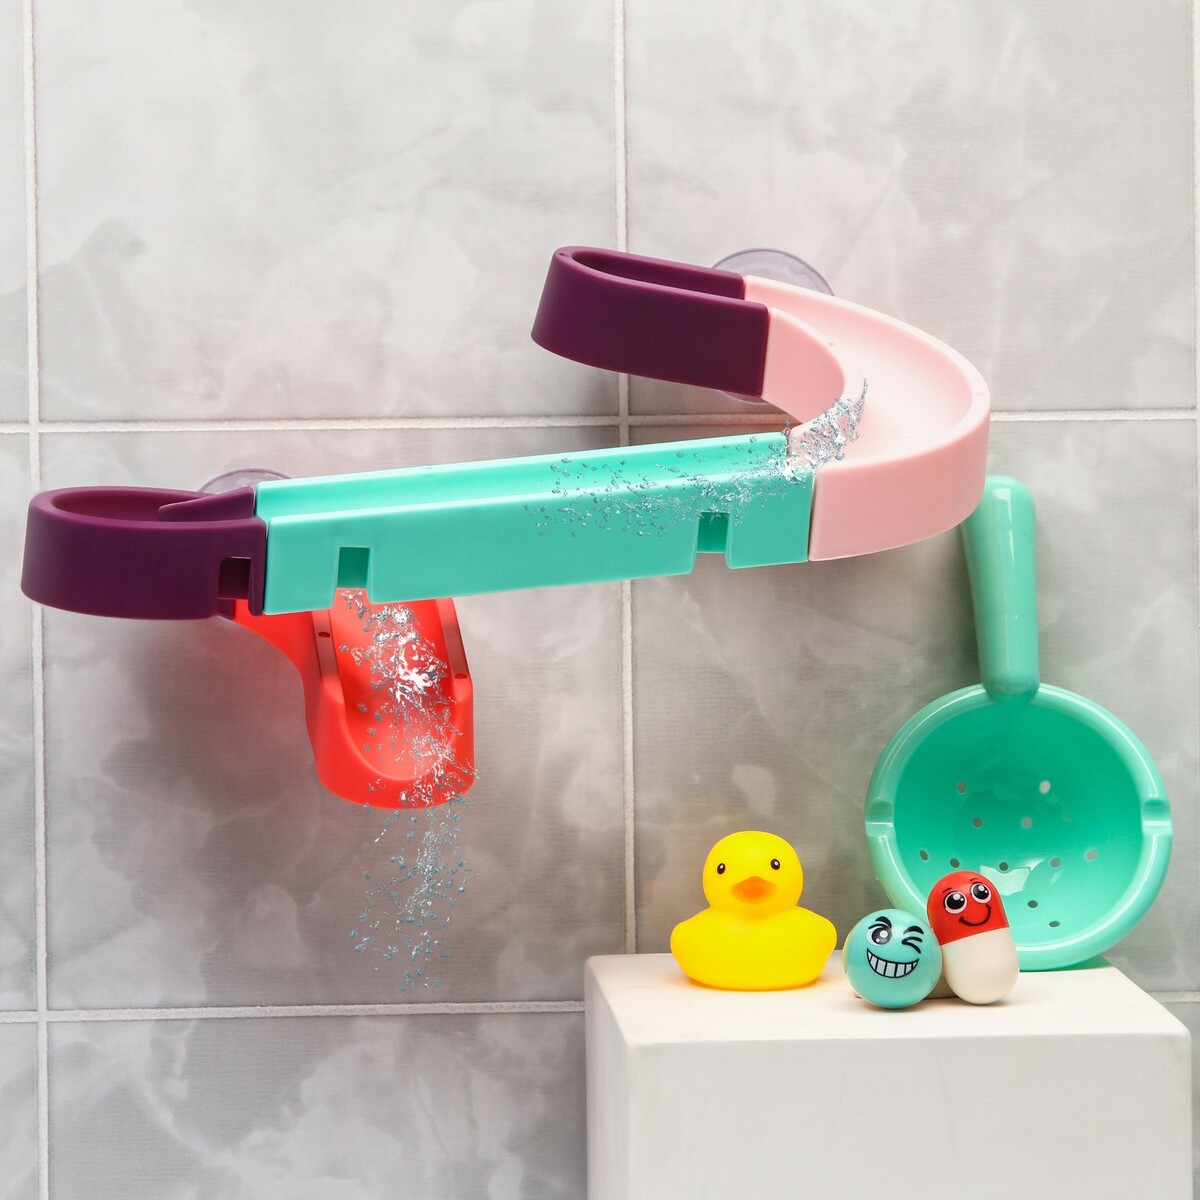 Игрушка водная горка для игры в ванной, конструктор, набор на присосках набор для купания детский ванночка 86 см горка ковш лейка розовый